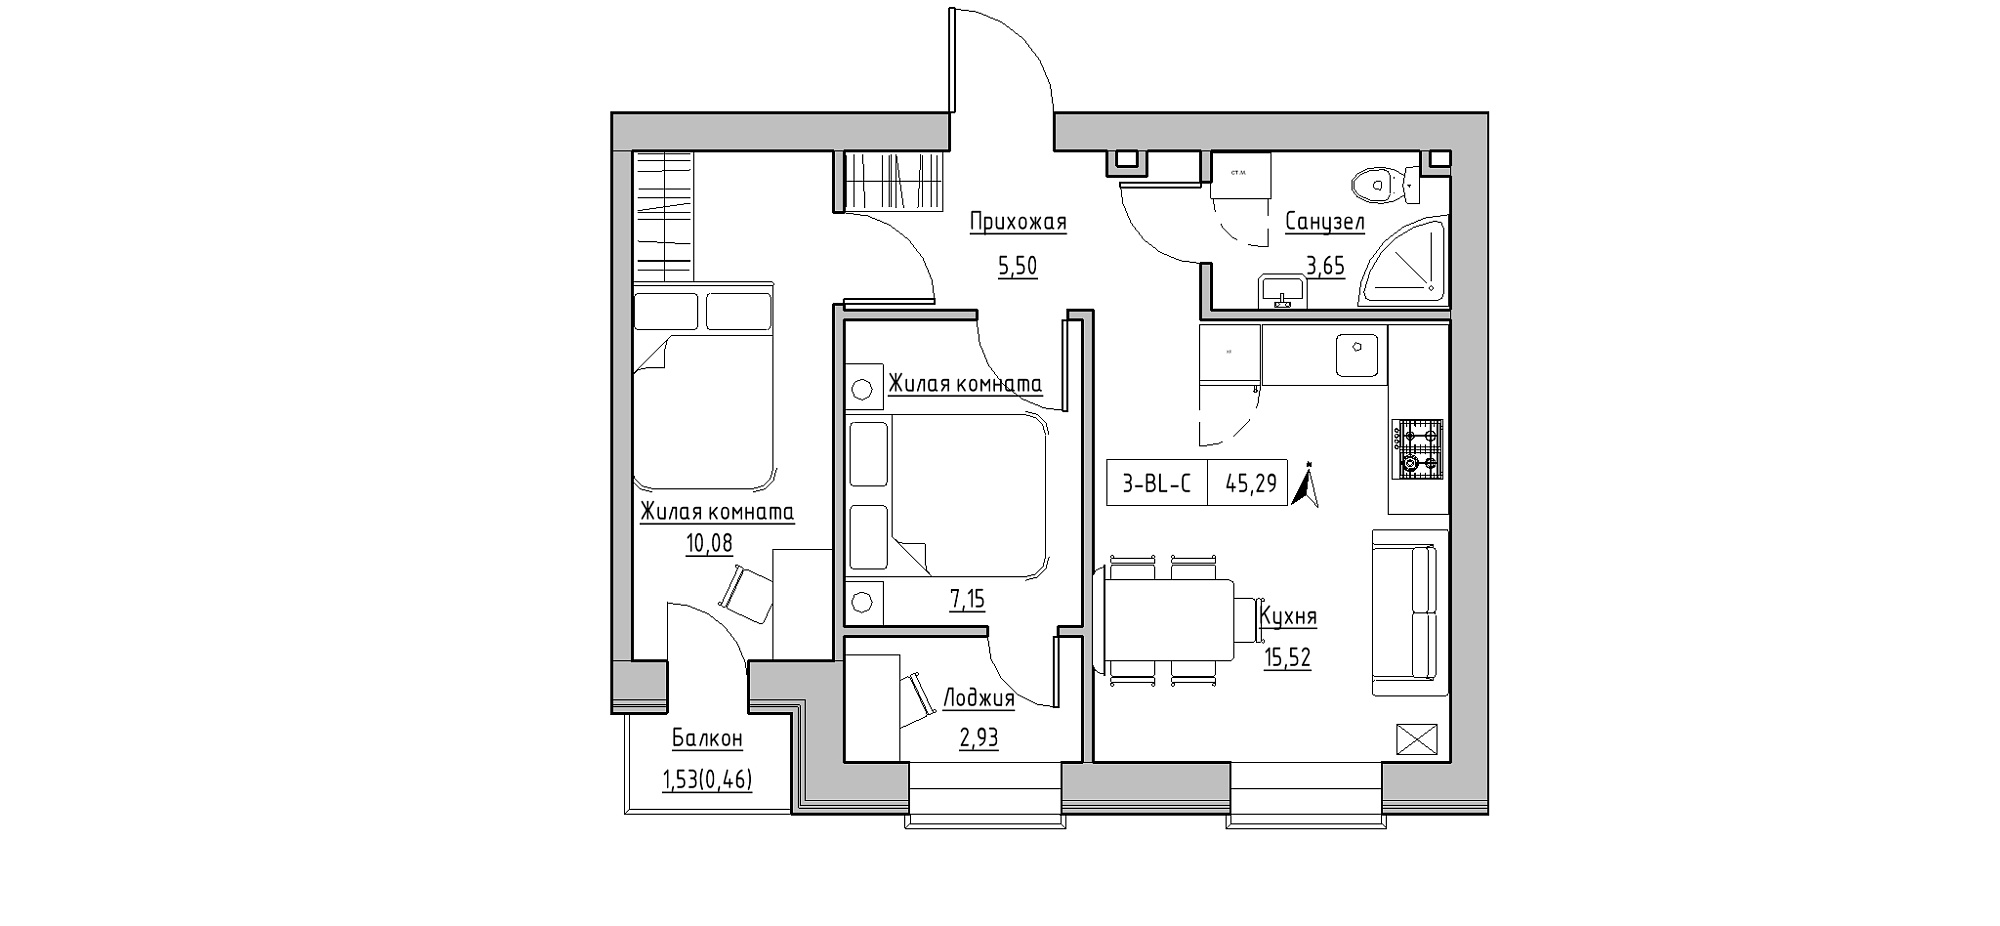 Планировка 2-к квартира площей 45.29м2, KS-020-03/0008.